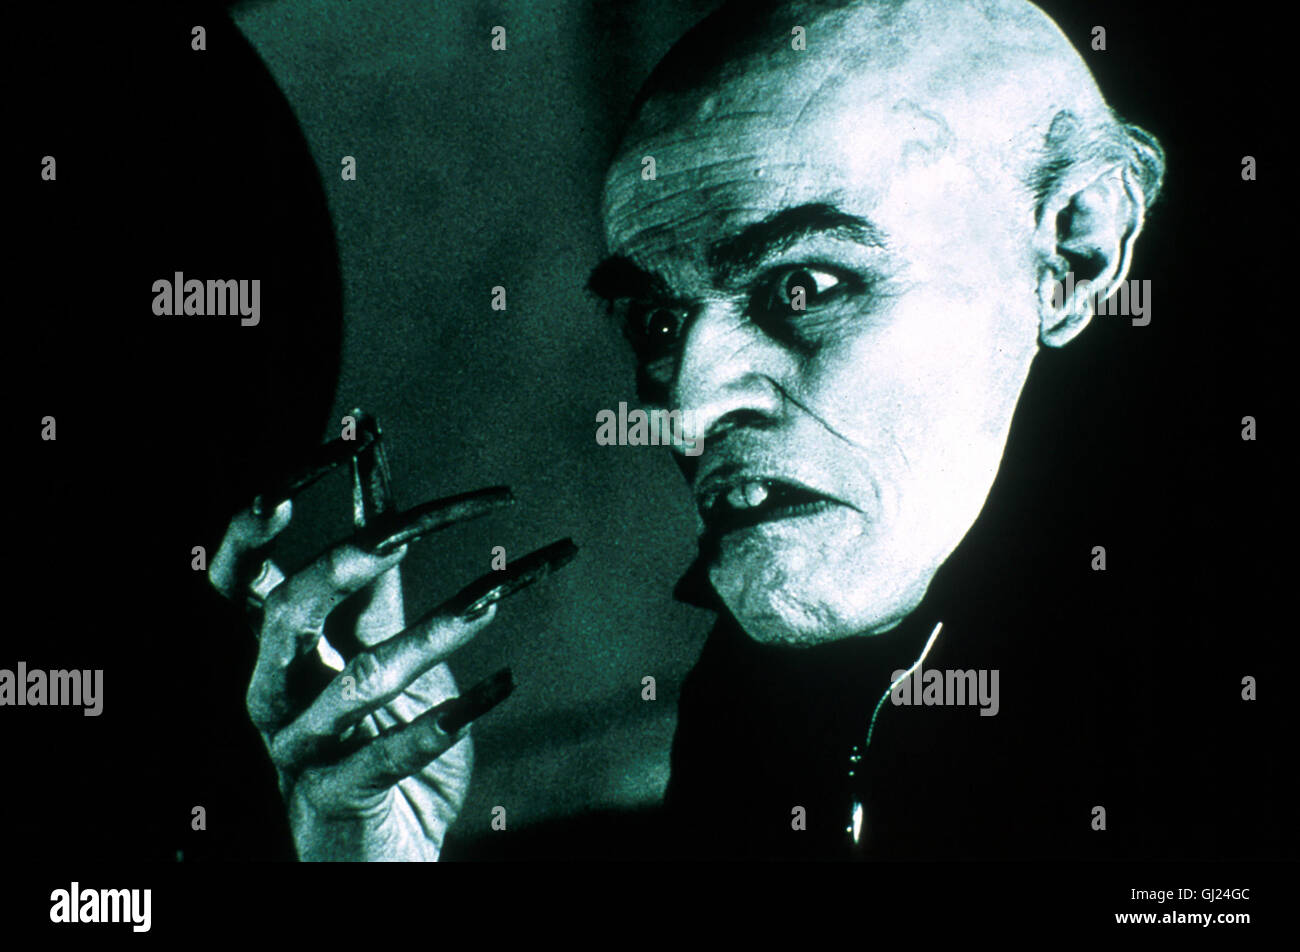 SHADOW OF THE VAMPIRE Friedrich Murnau verpflichtet für seinen Film  'Nosferatu' einen echten Vampir (Willem Dafoe), dem um Mehr zu verleihen  Film Authentizität. Réalisateur verspricht der Blutsauger dem das Blut  senneur Hauptdarstellerin